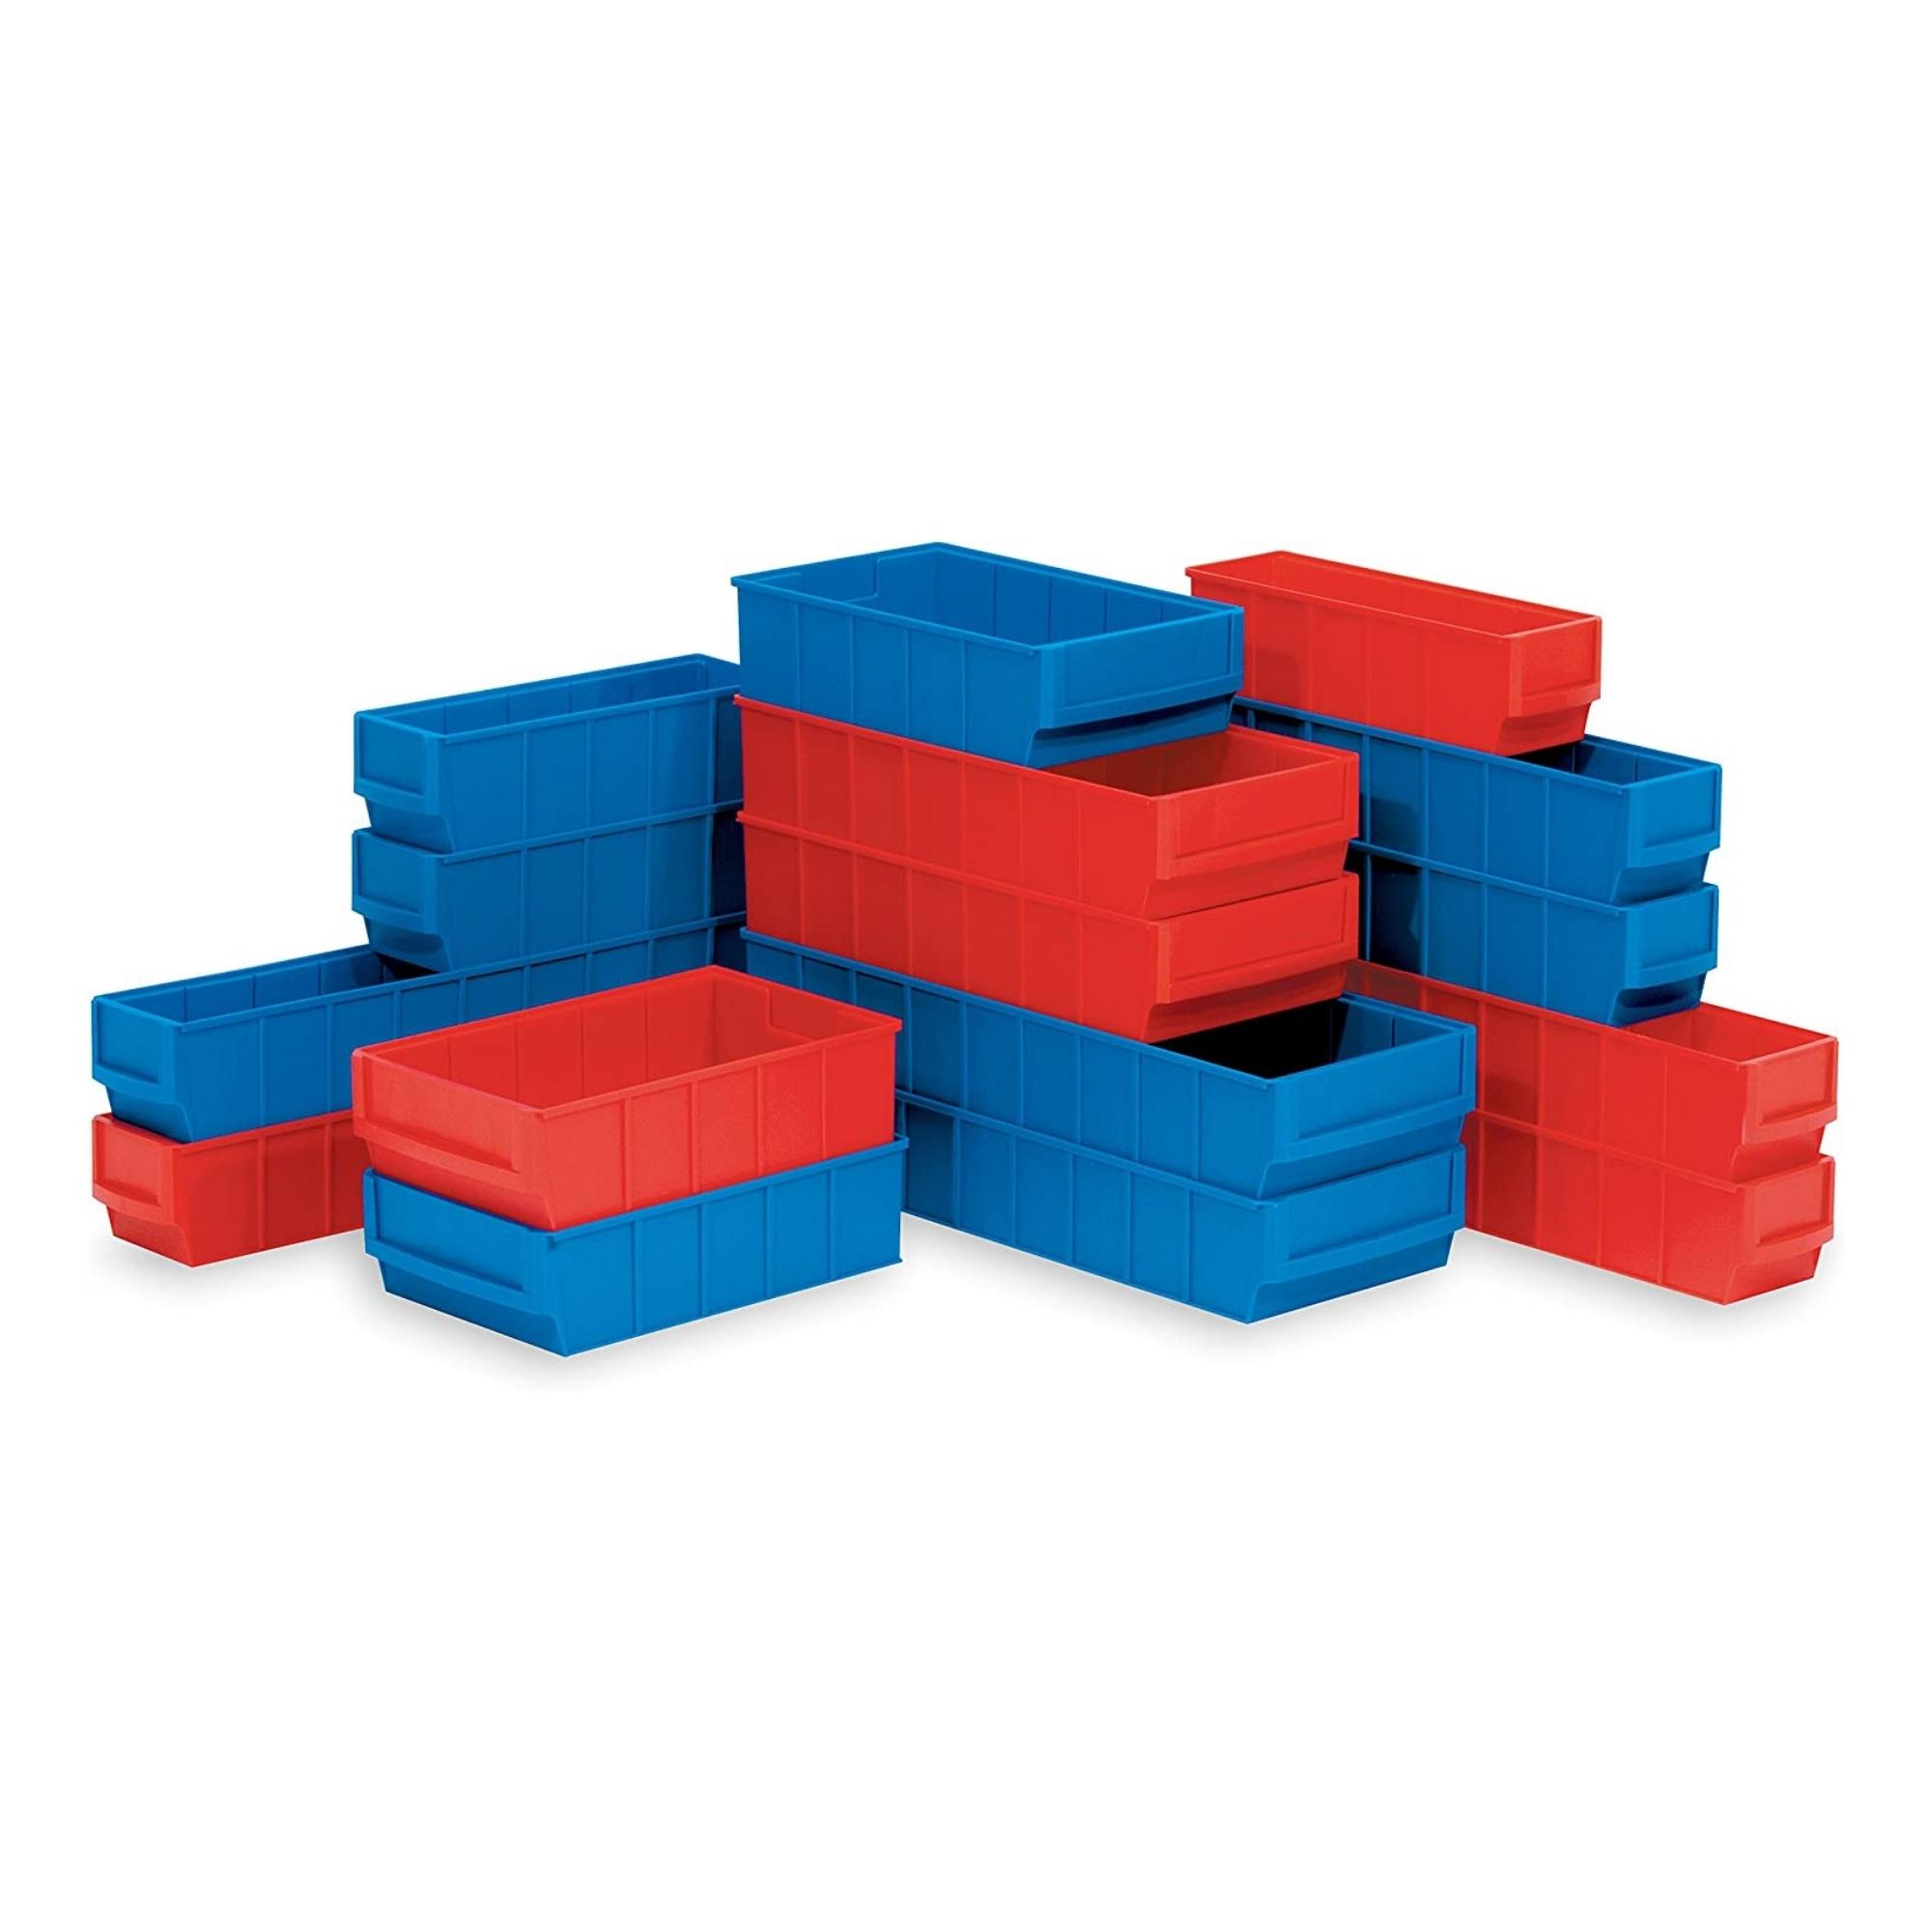 Blaue Industriebox 500 B | HxBxT 8,1x18,3x50cm | 6 Liter| Sichtlagerkasten, Sortimentskasten, Sortimentsbox, Kleinteilebox